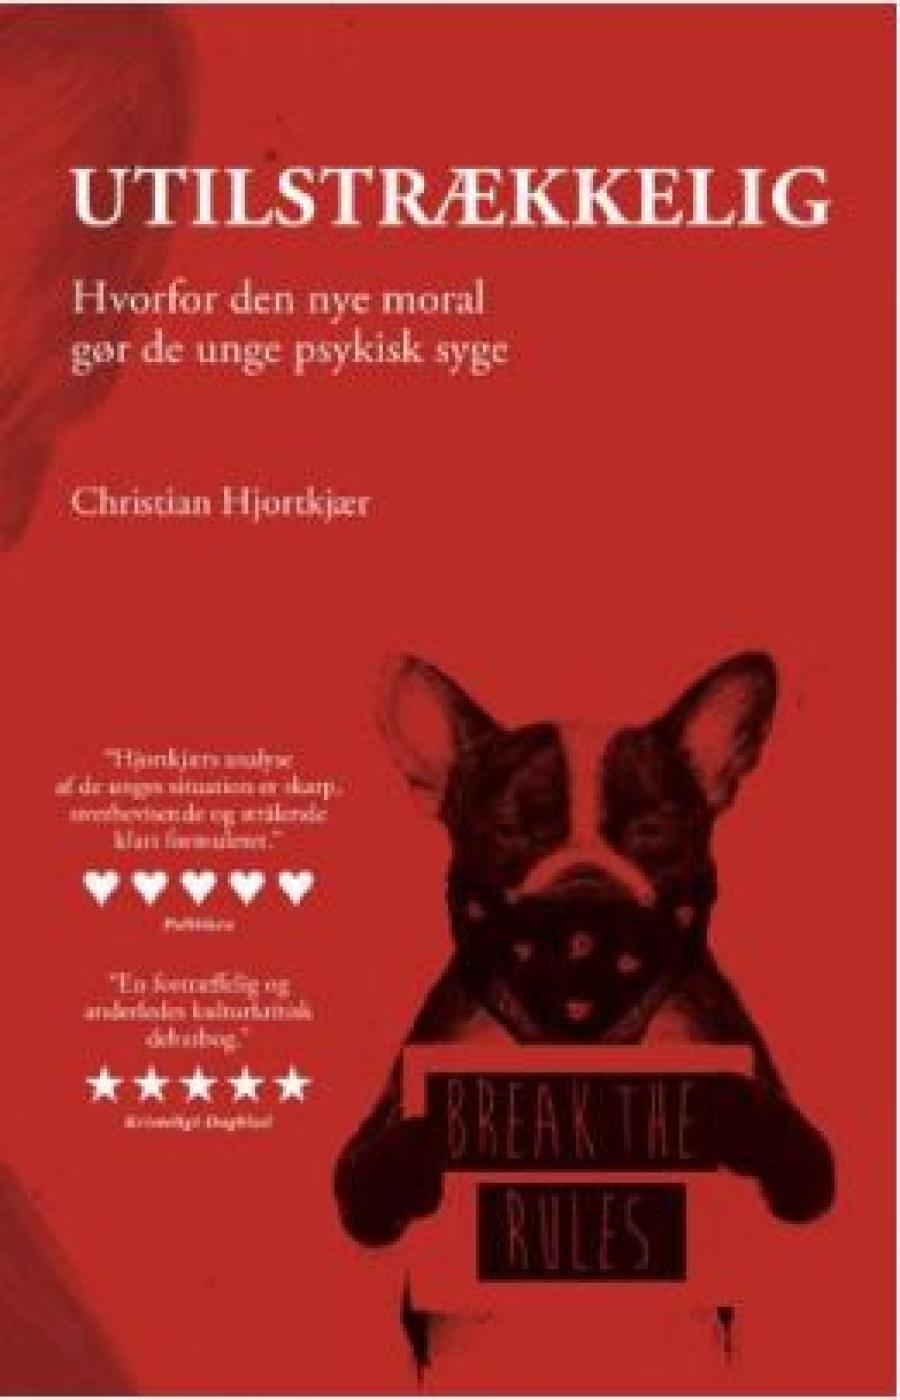 Christian Hjortskjær, "Utilstrækkelig"